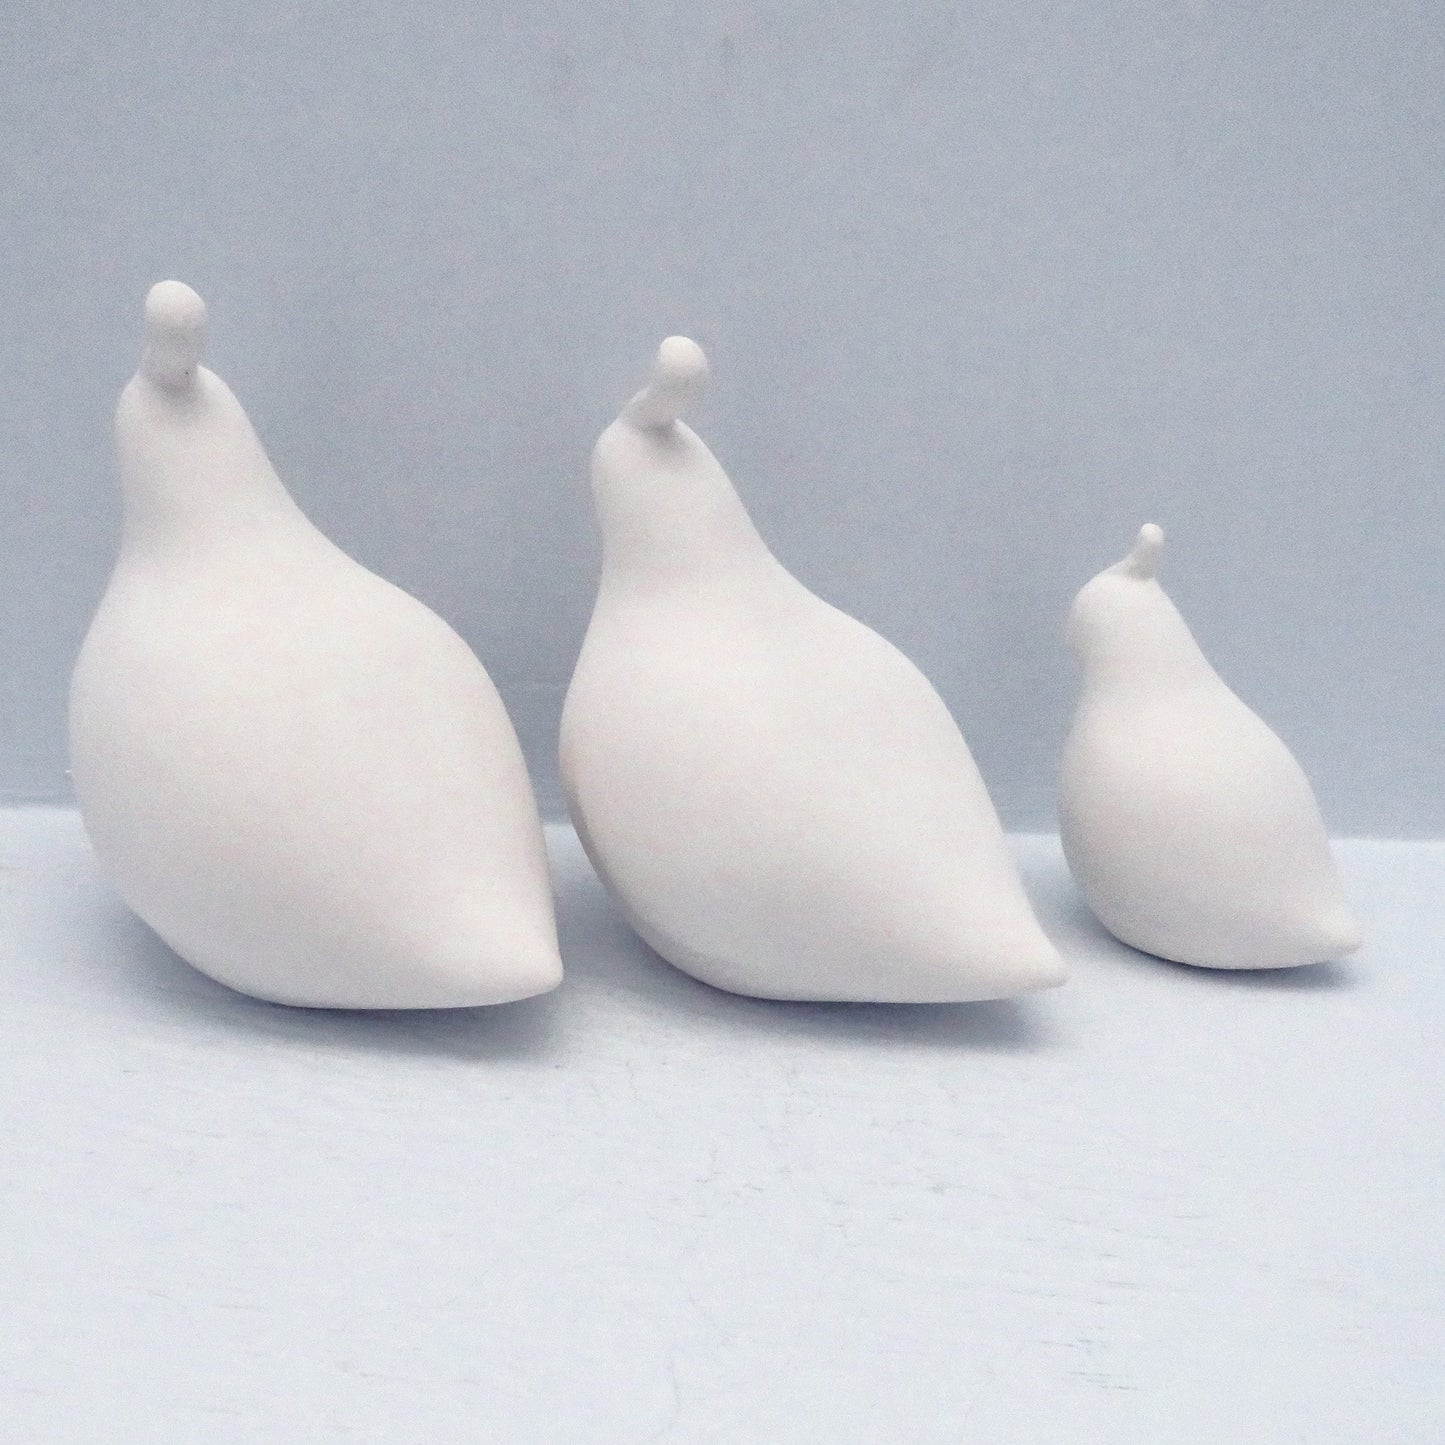 Unpainted Ceramic Bisque Quail Figurines, Ready to Paint Quail Statues, Ceramics to Paint, Paintable Ceramics, Bird Statues